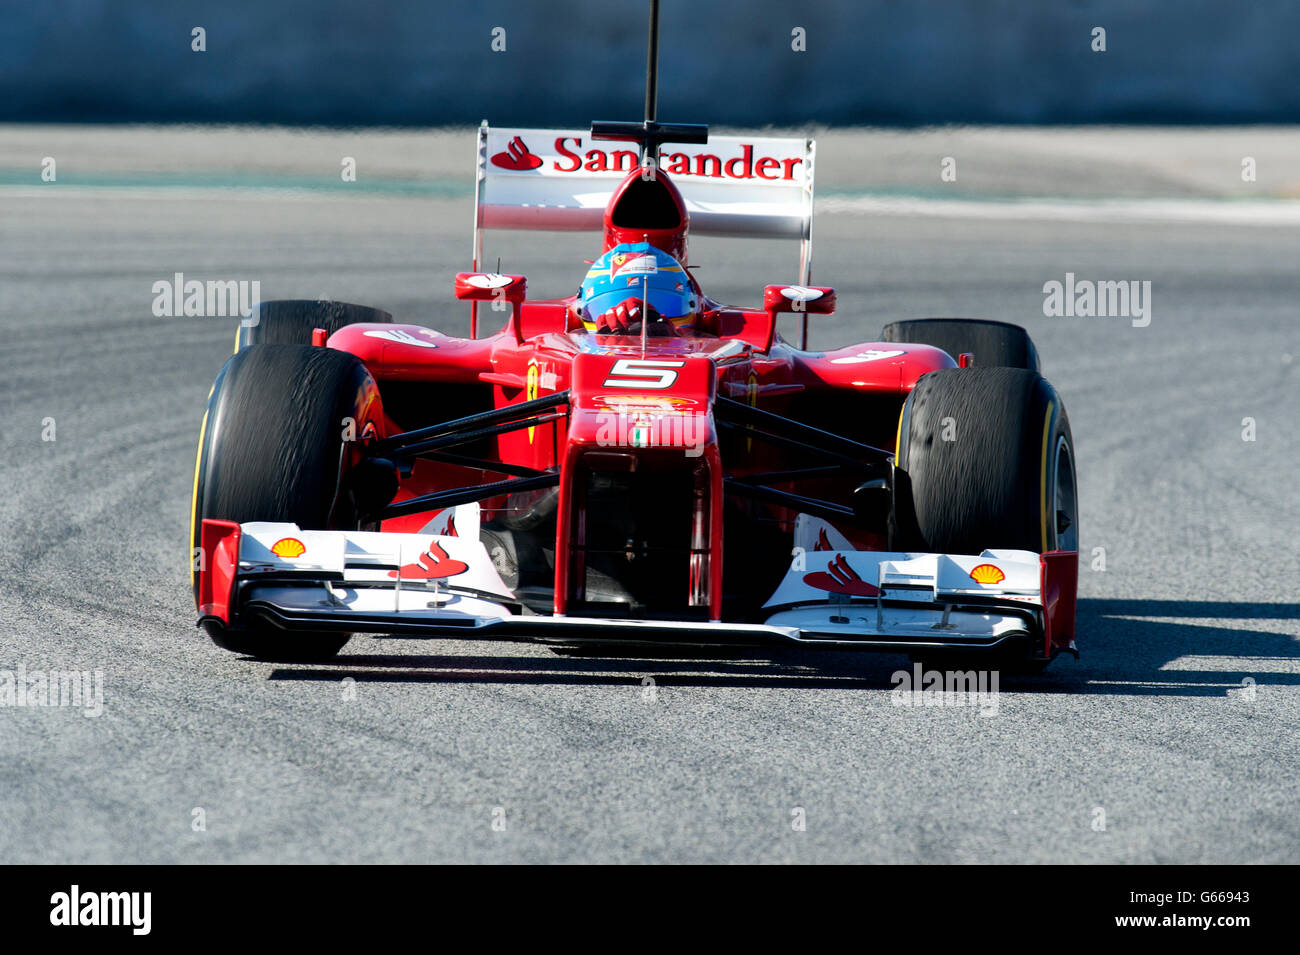 Fernando Alonso, SPA, Ferrari F2012, Formule 1 séances d'essai, février 2012, Barcelone, Espagne, Europe Banque D'Images